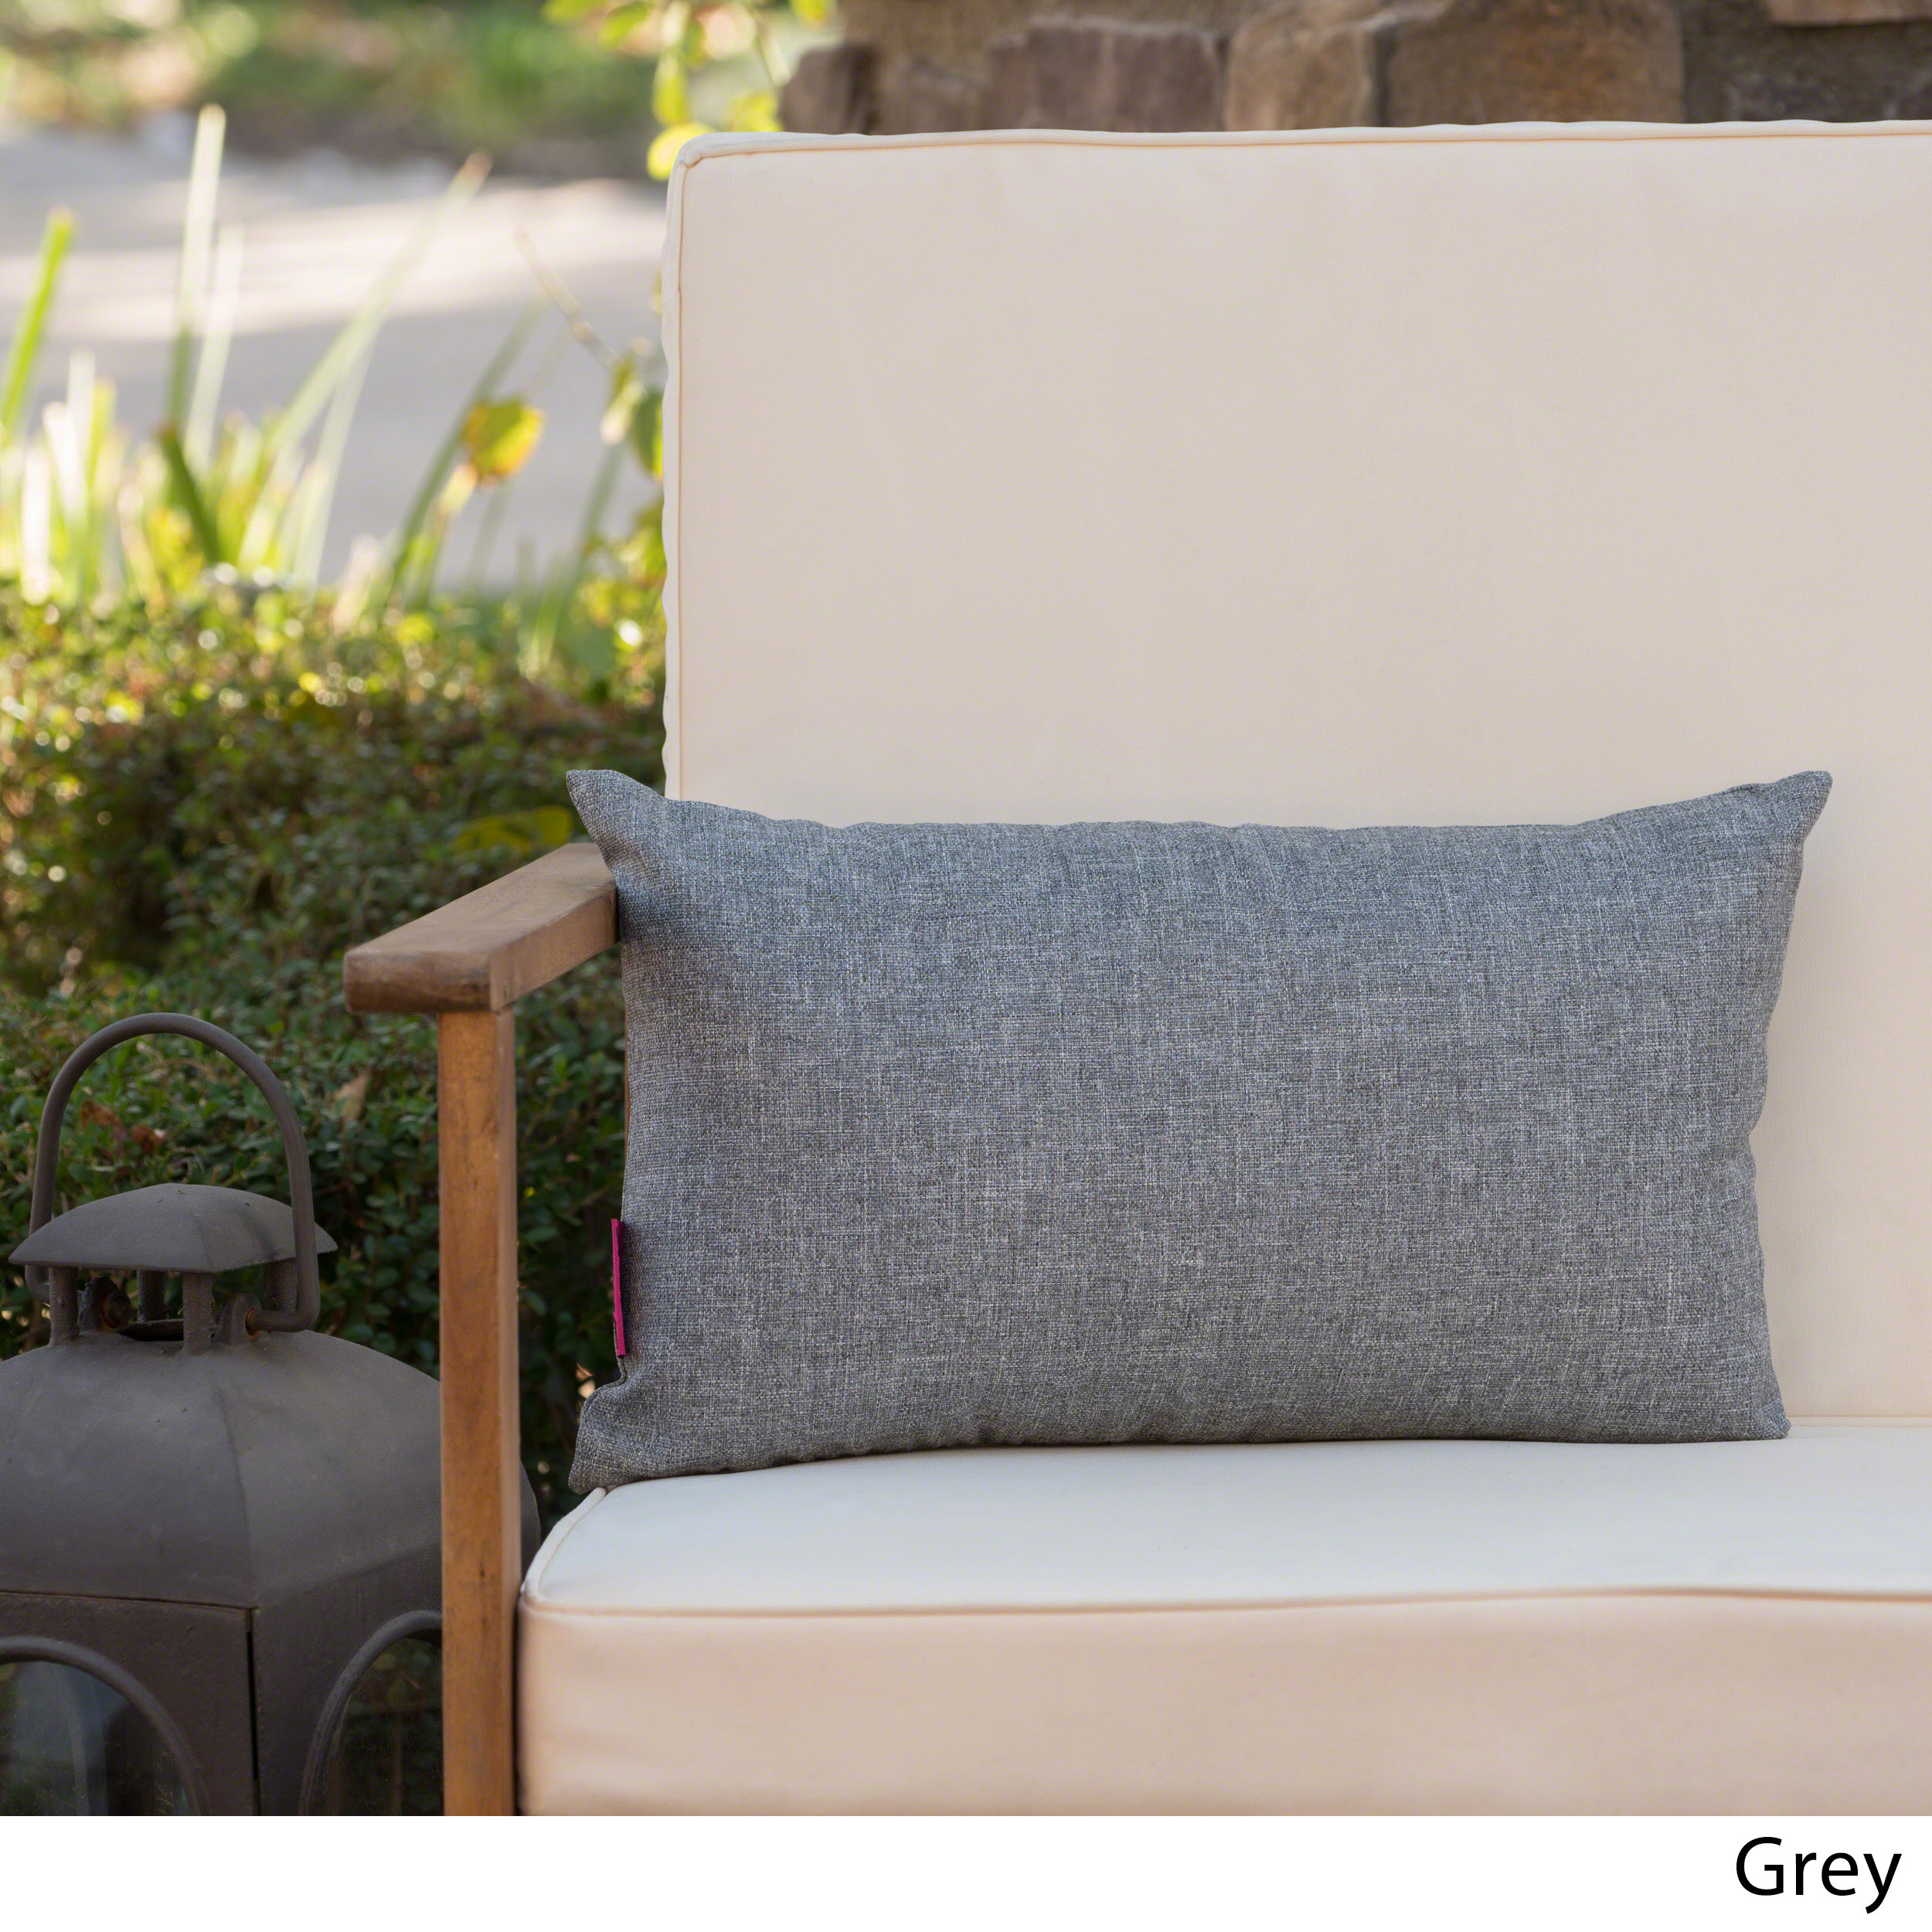 Noble House Coronado 18.5x11.5" Outdoor Fabric Throw Pillow in Gray - image 7 of 11